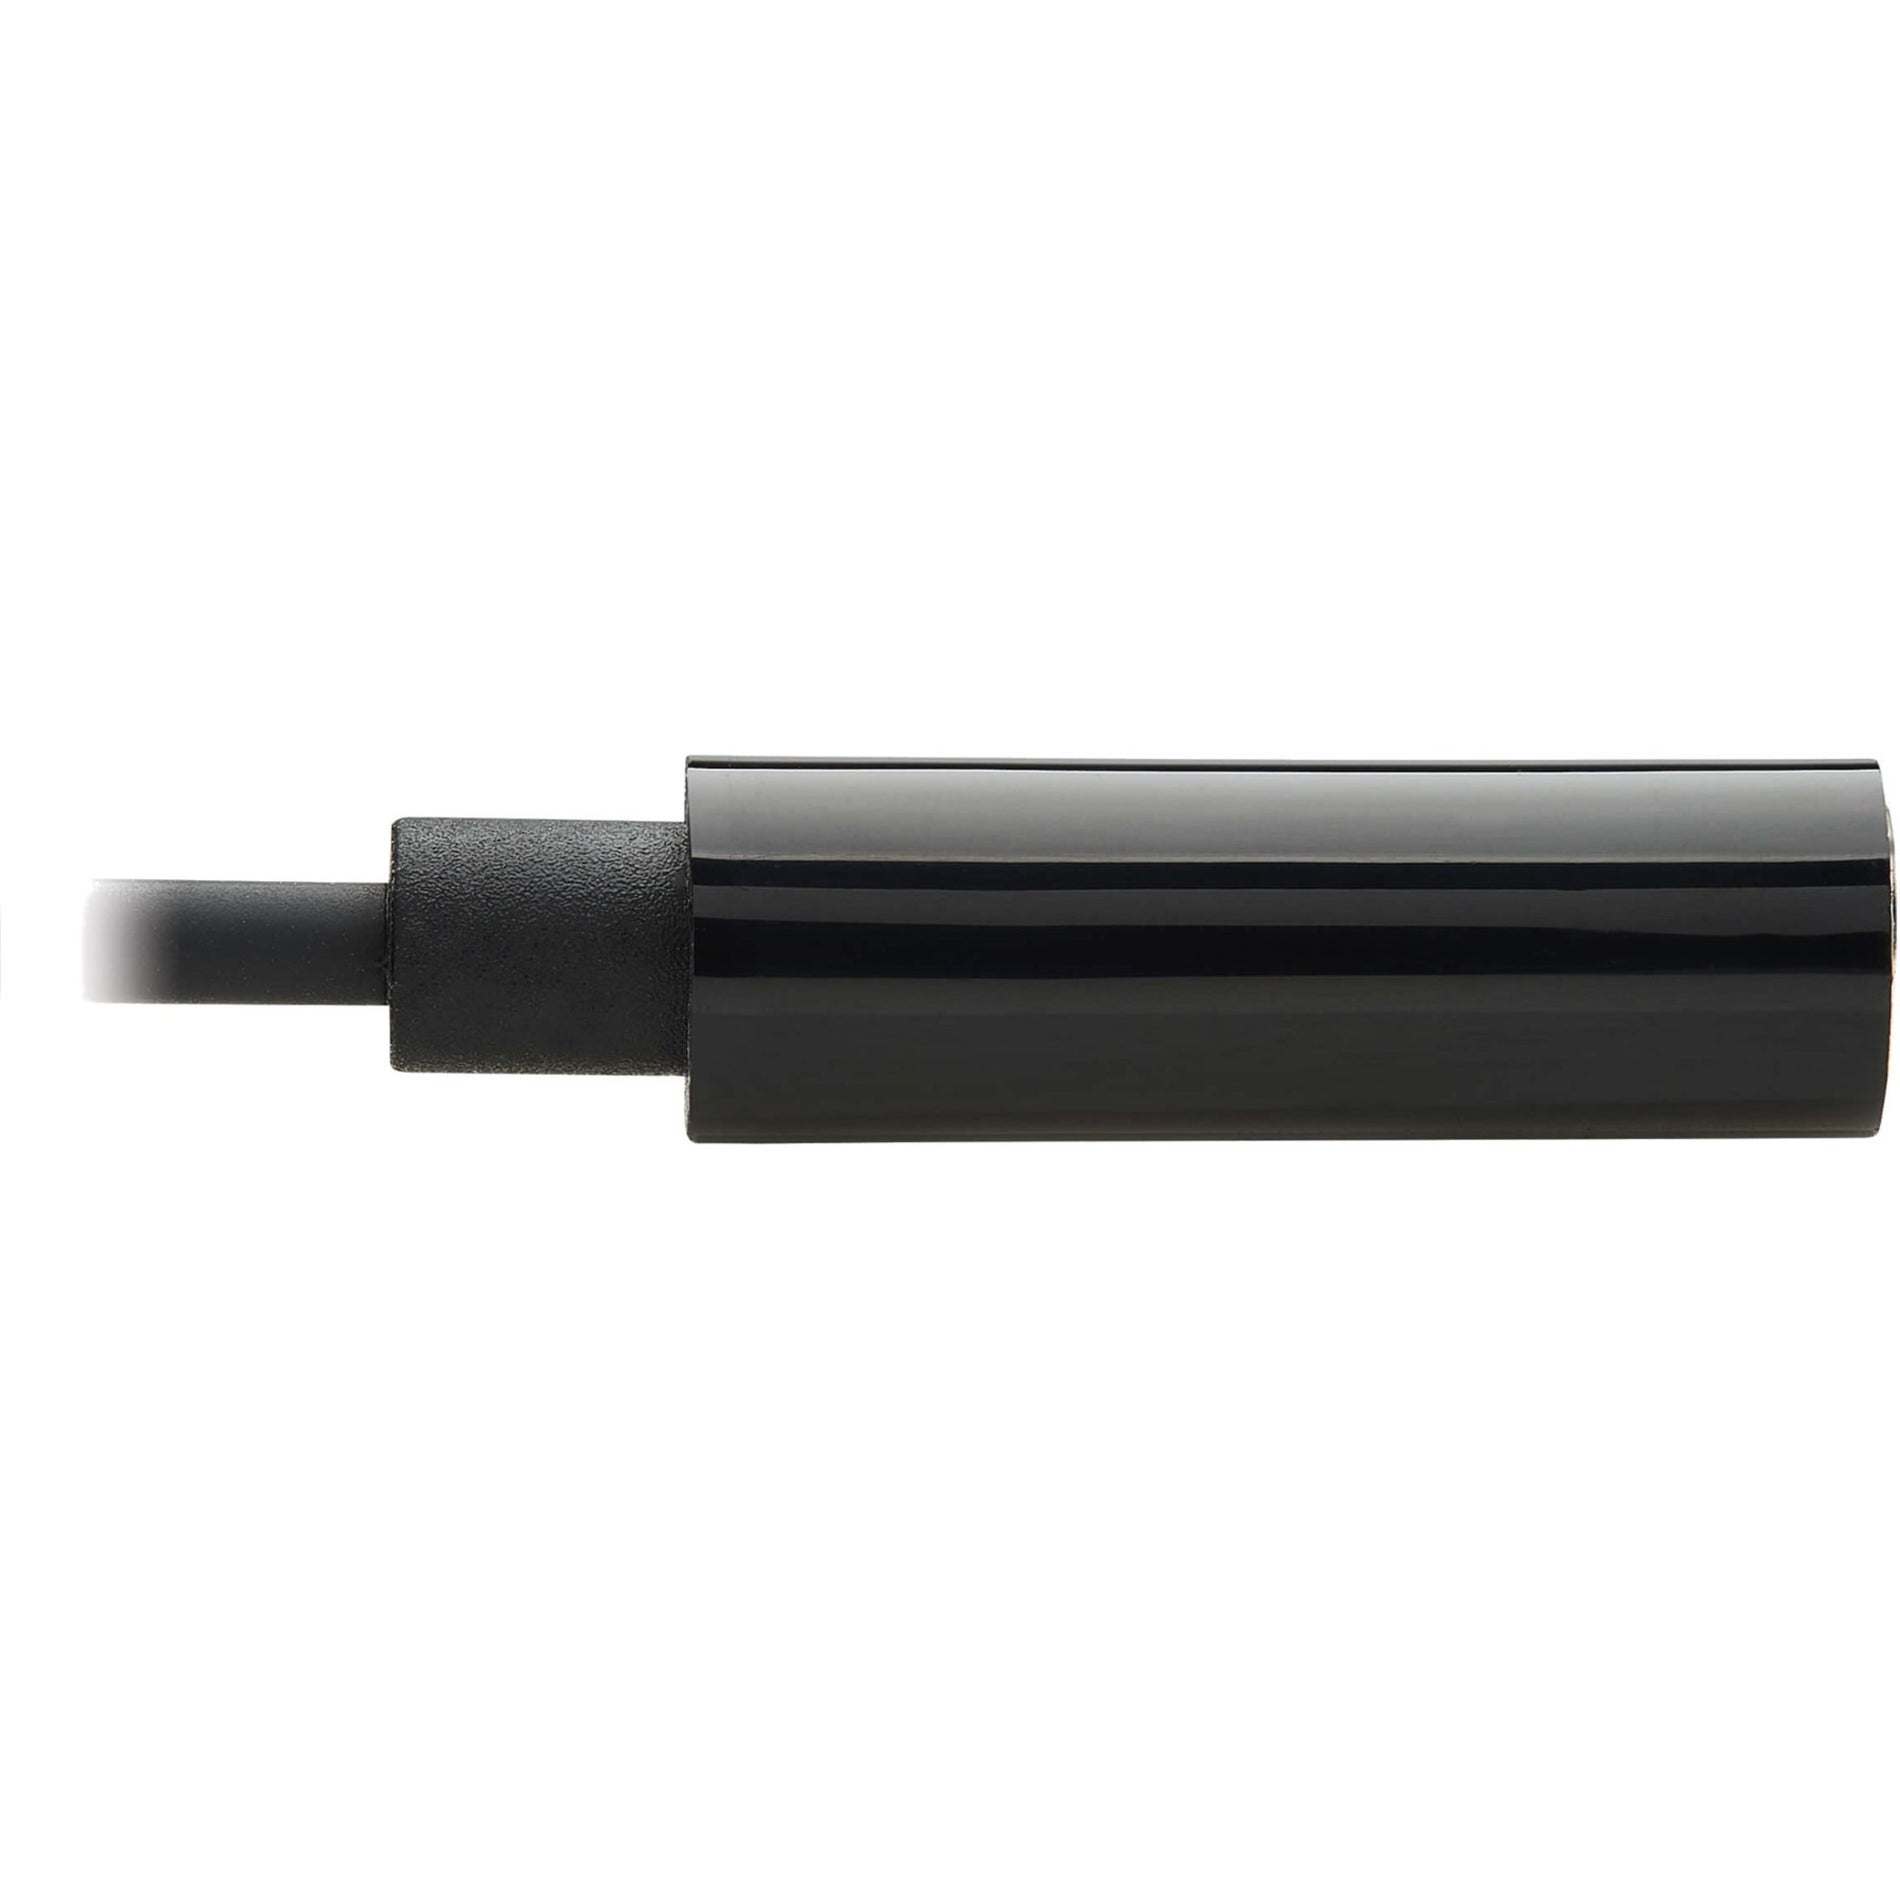 تريب لايت U437-001 محول USB-C إلى مقبس سماعة رأس 3.5 مم ، سهل التركيب والاستخدام ، كابل بطول 7.92 بوصة ، أسود